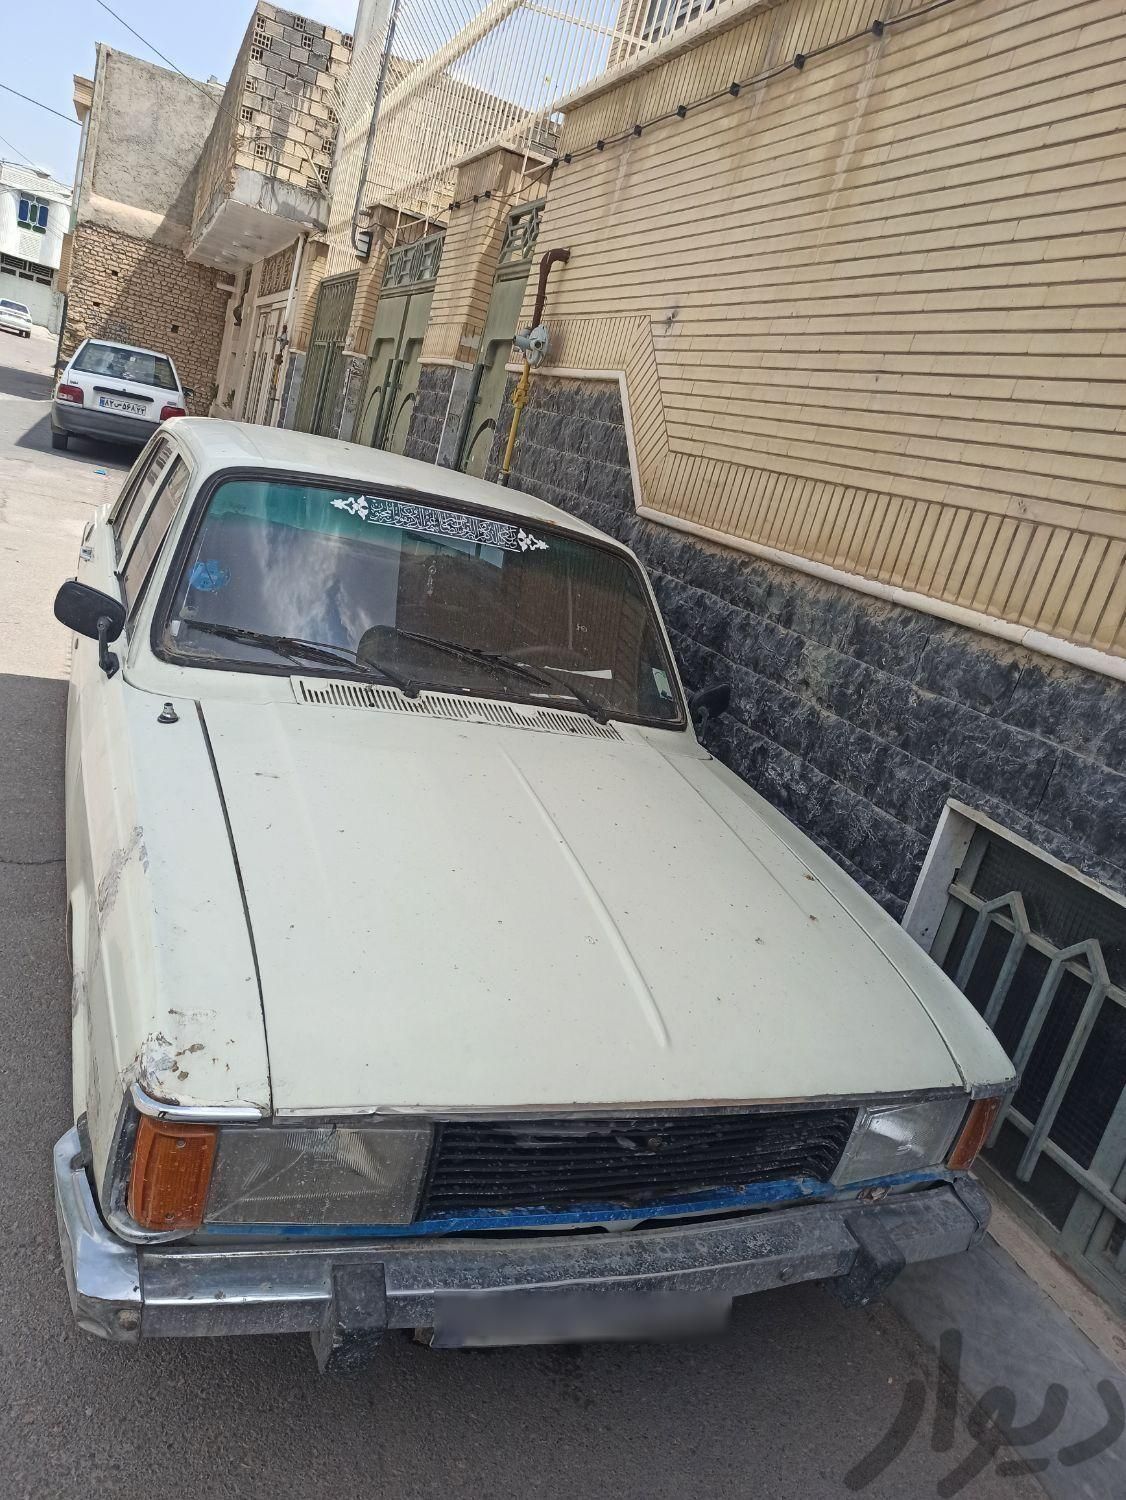 پیکان دوگانه سوز CNG، مدل ۱۳۷۶|سواری و وانت|اصفهان, محله نو|دیوار